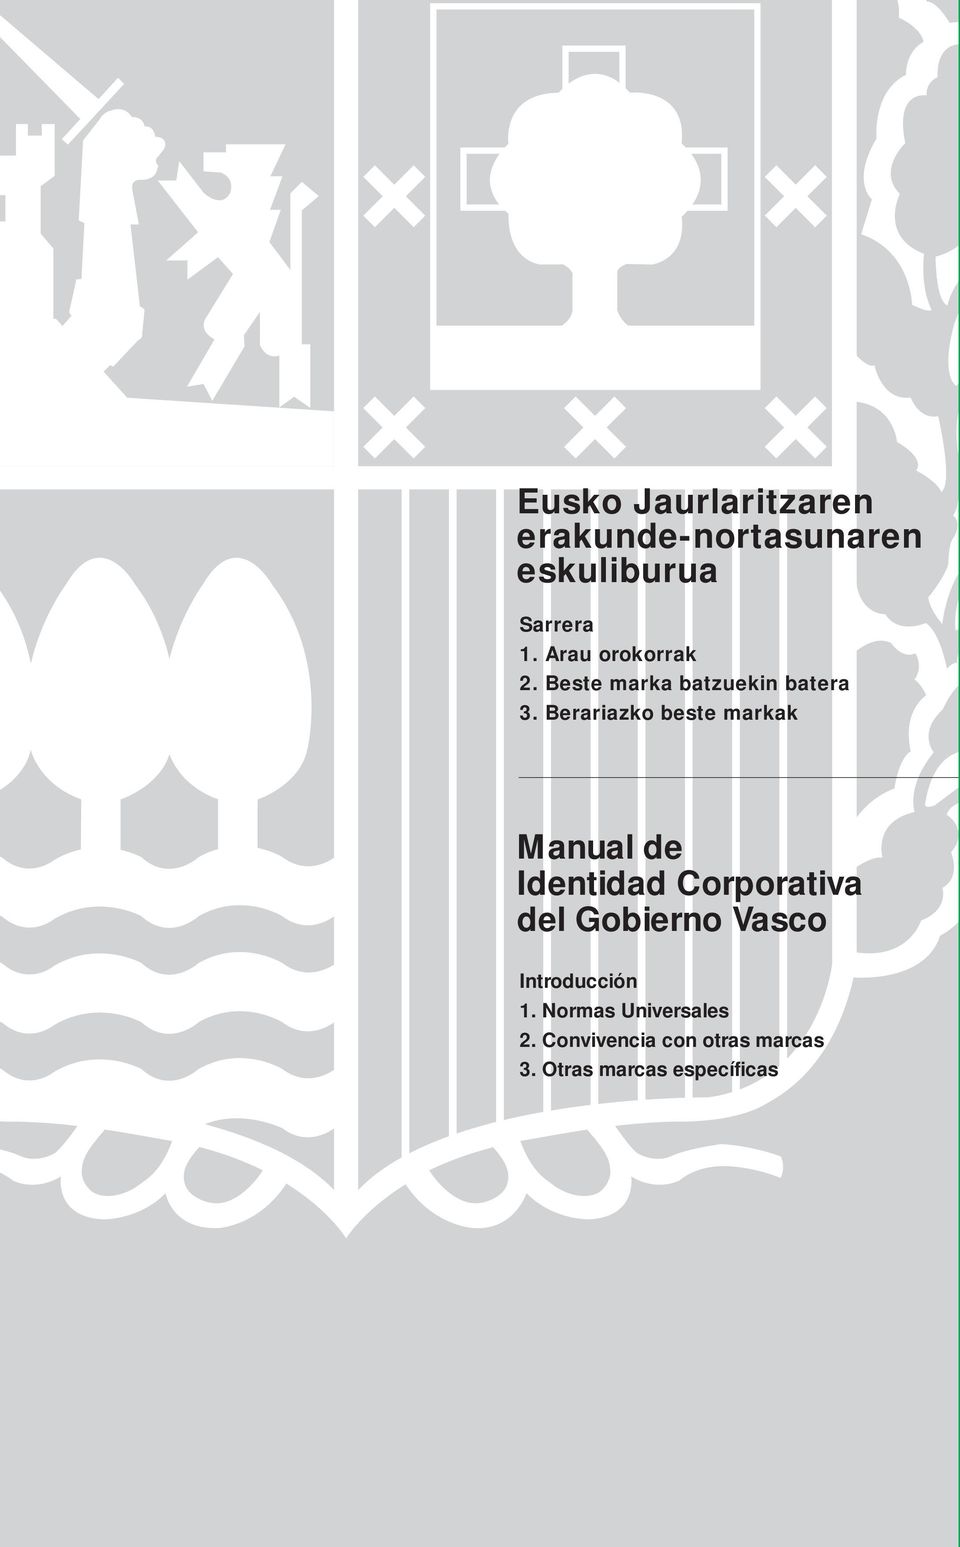 Berariazko beste markak Manual de Identidad Corporativa del Gobierno